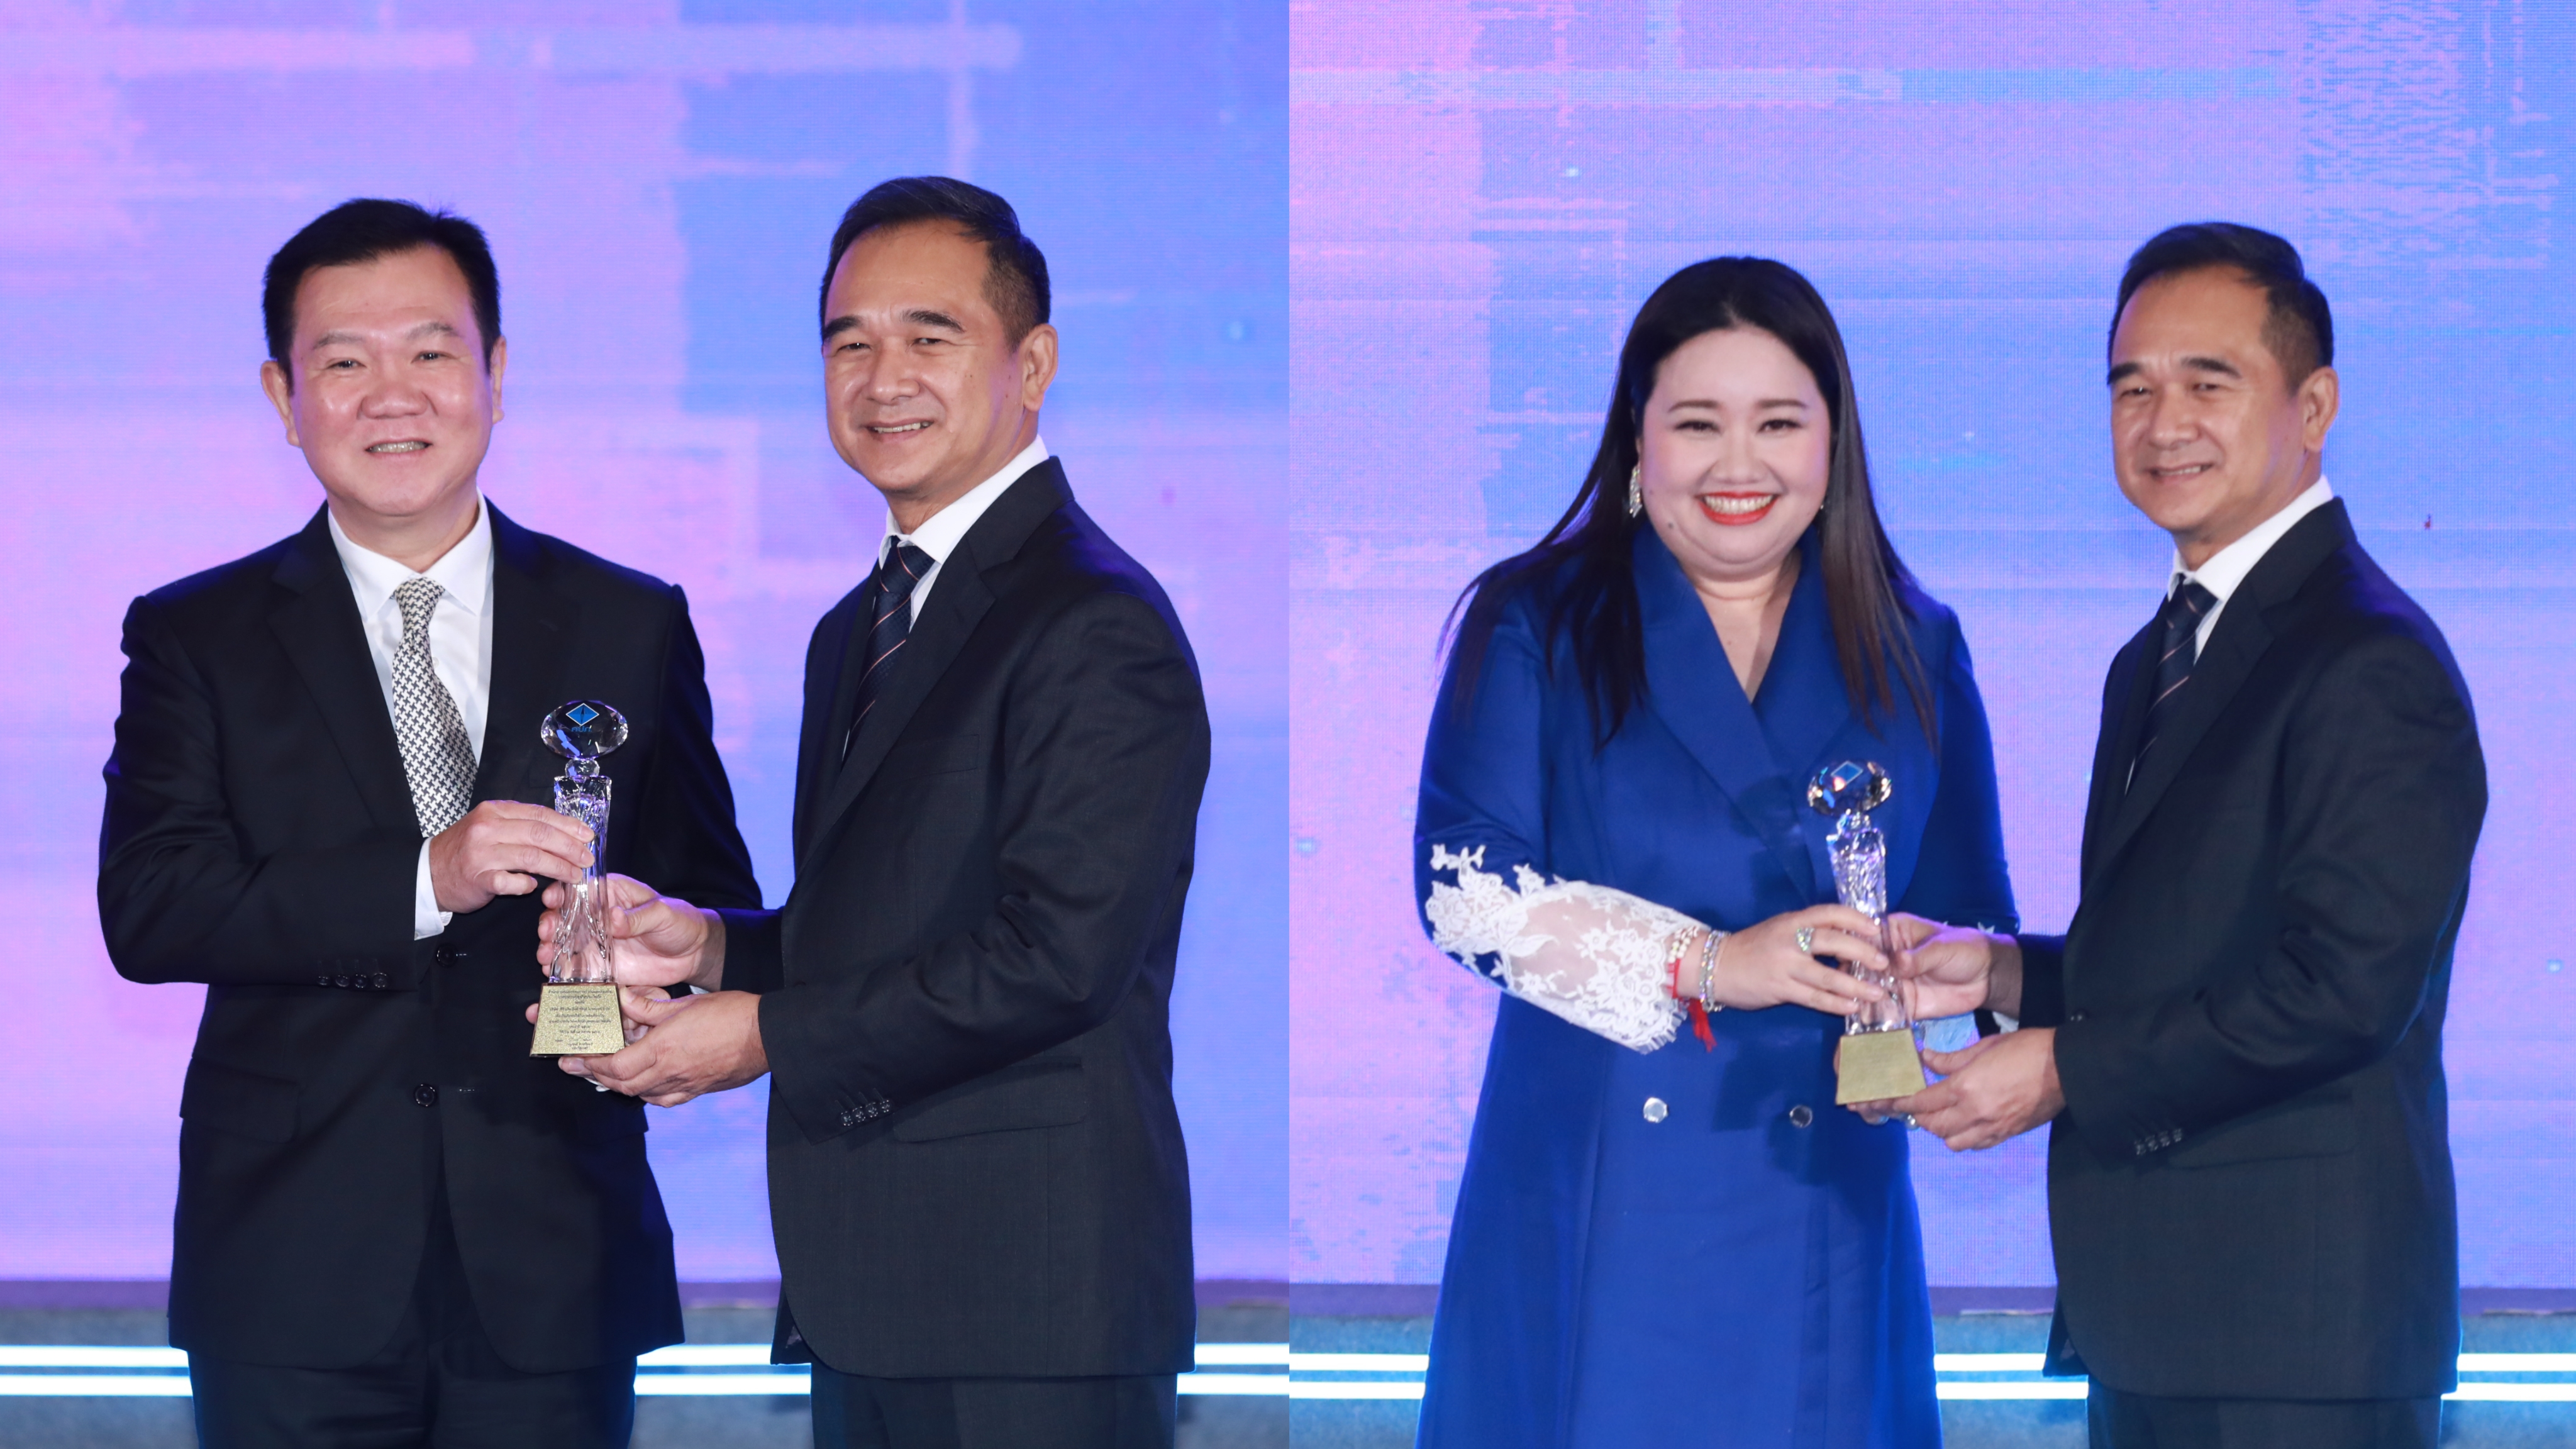 TQM กวาด 3 รางวัล นายหน้าประกันภัยดีเด่น ในงานมอบรางวัล Prime Minister’s Insurance Awards 2023